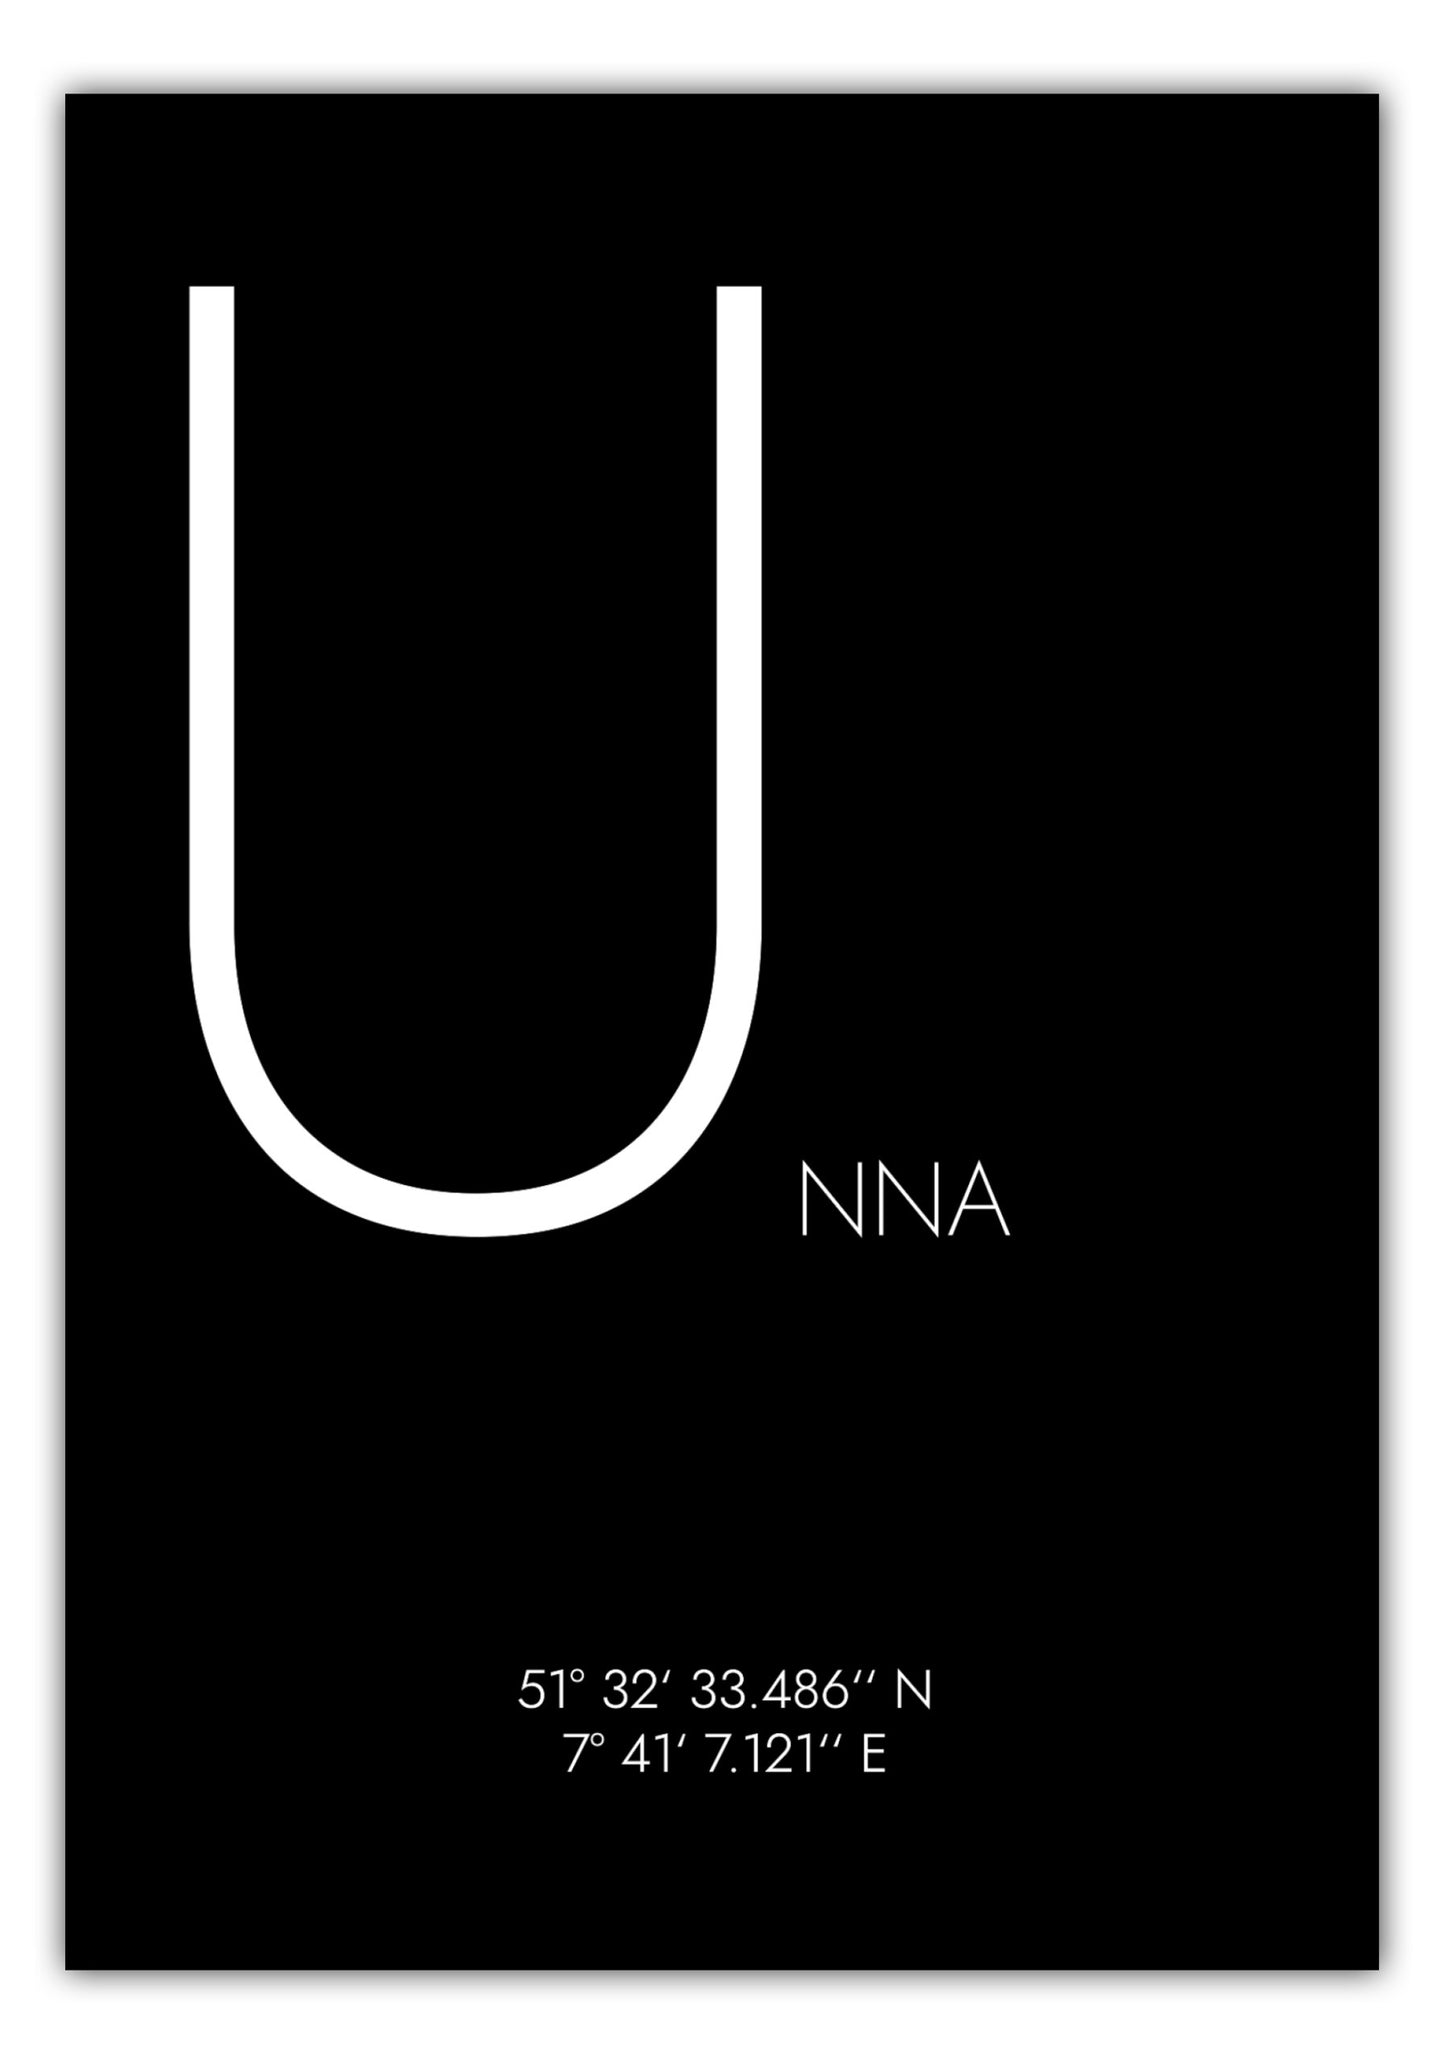 Poster Unna Koordinaten #4